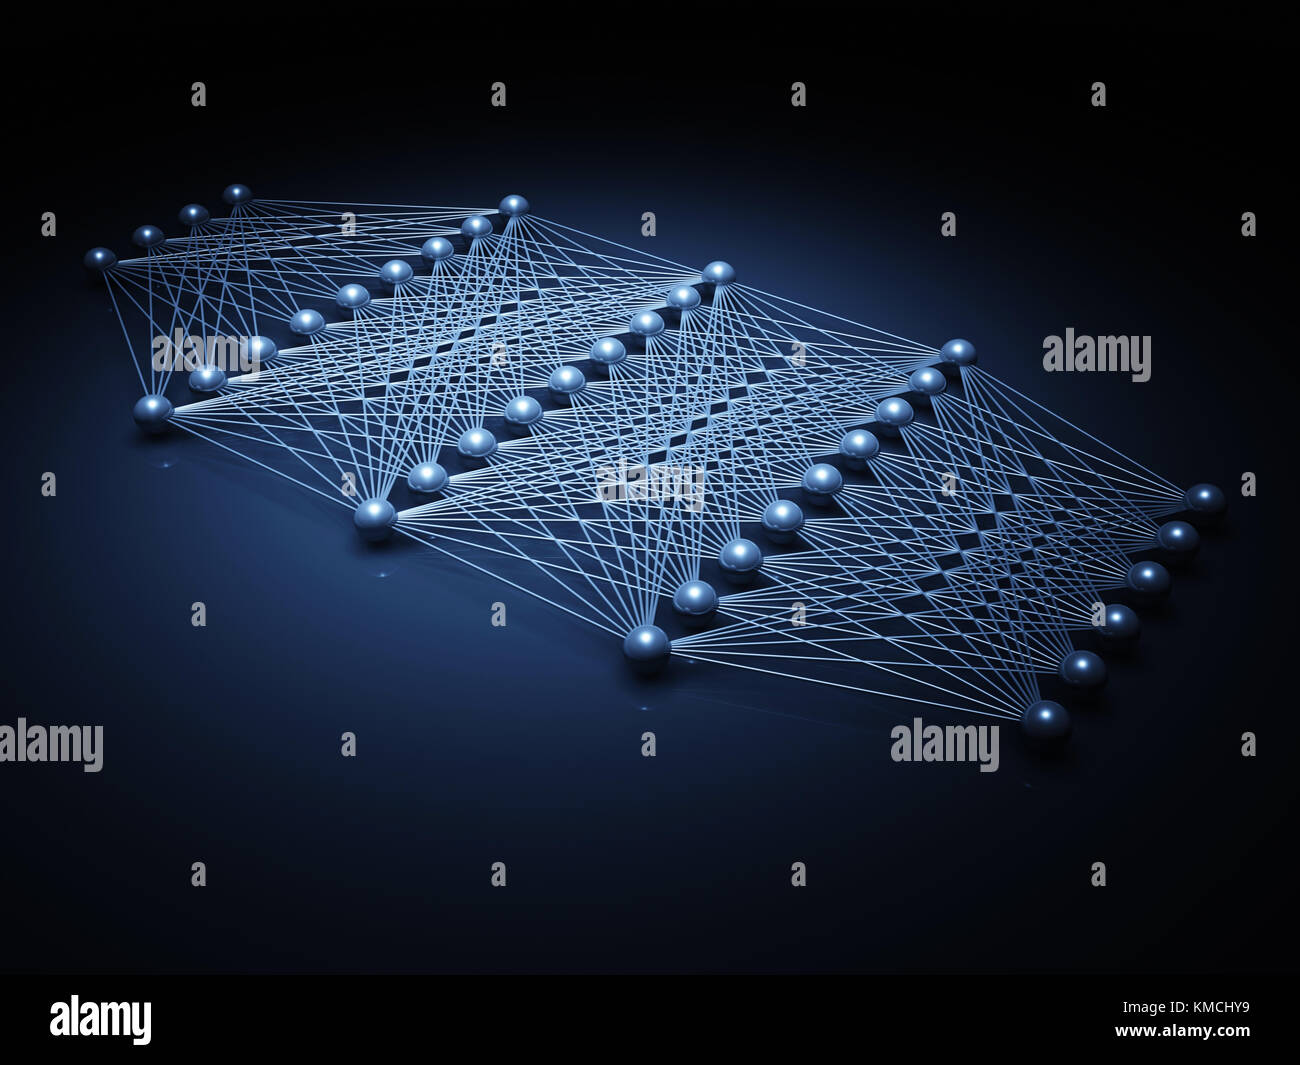 Künstliche tiefe neuronale Netzwerk Struktur, digitale Illustration mit Schaltplan blau Modell, 3D-Rendering Stockfoto